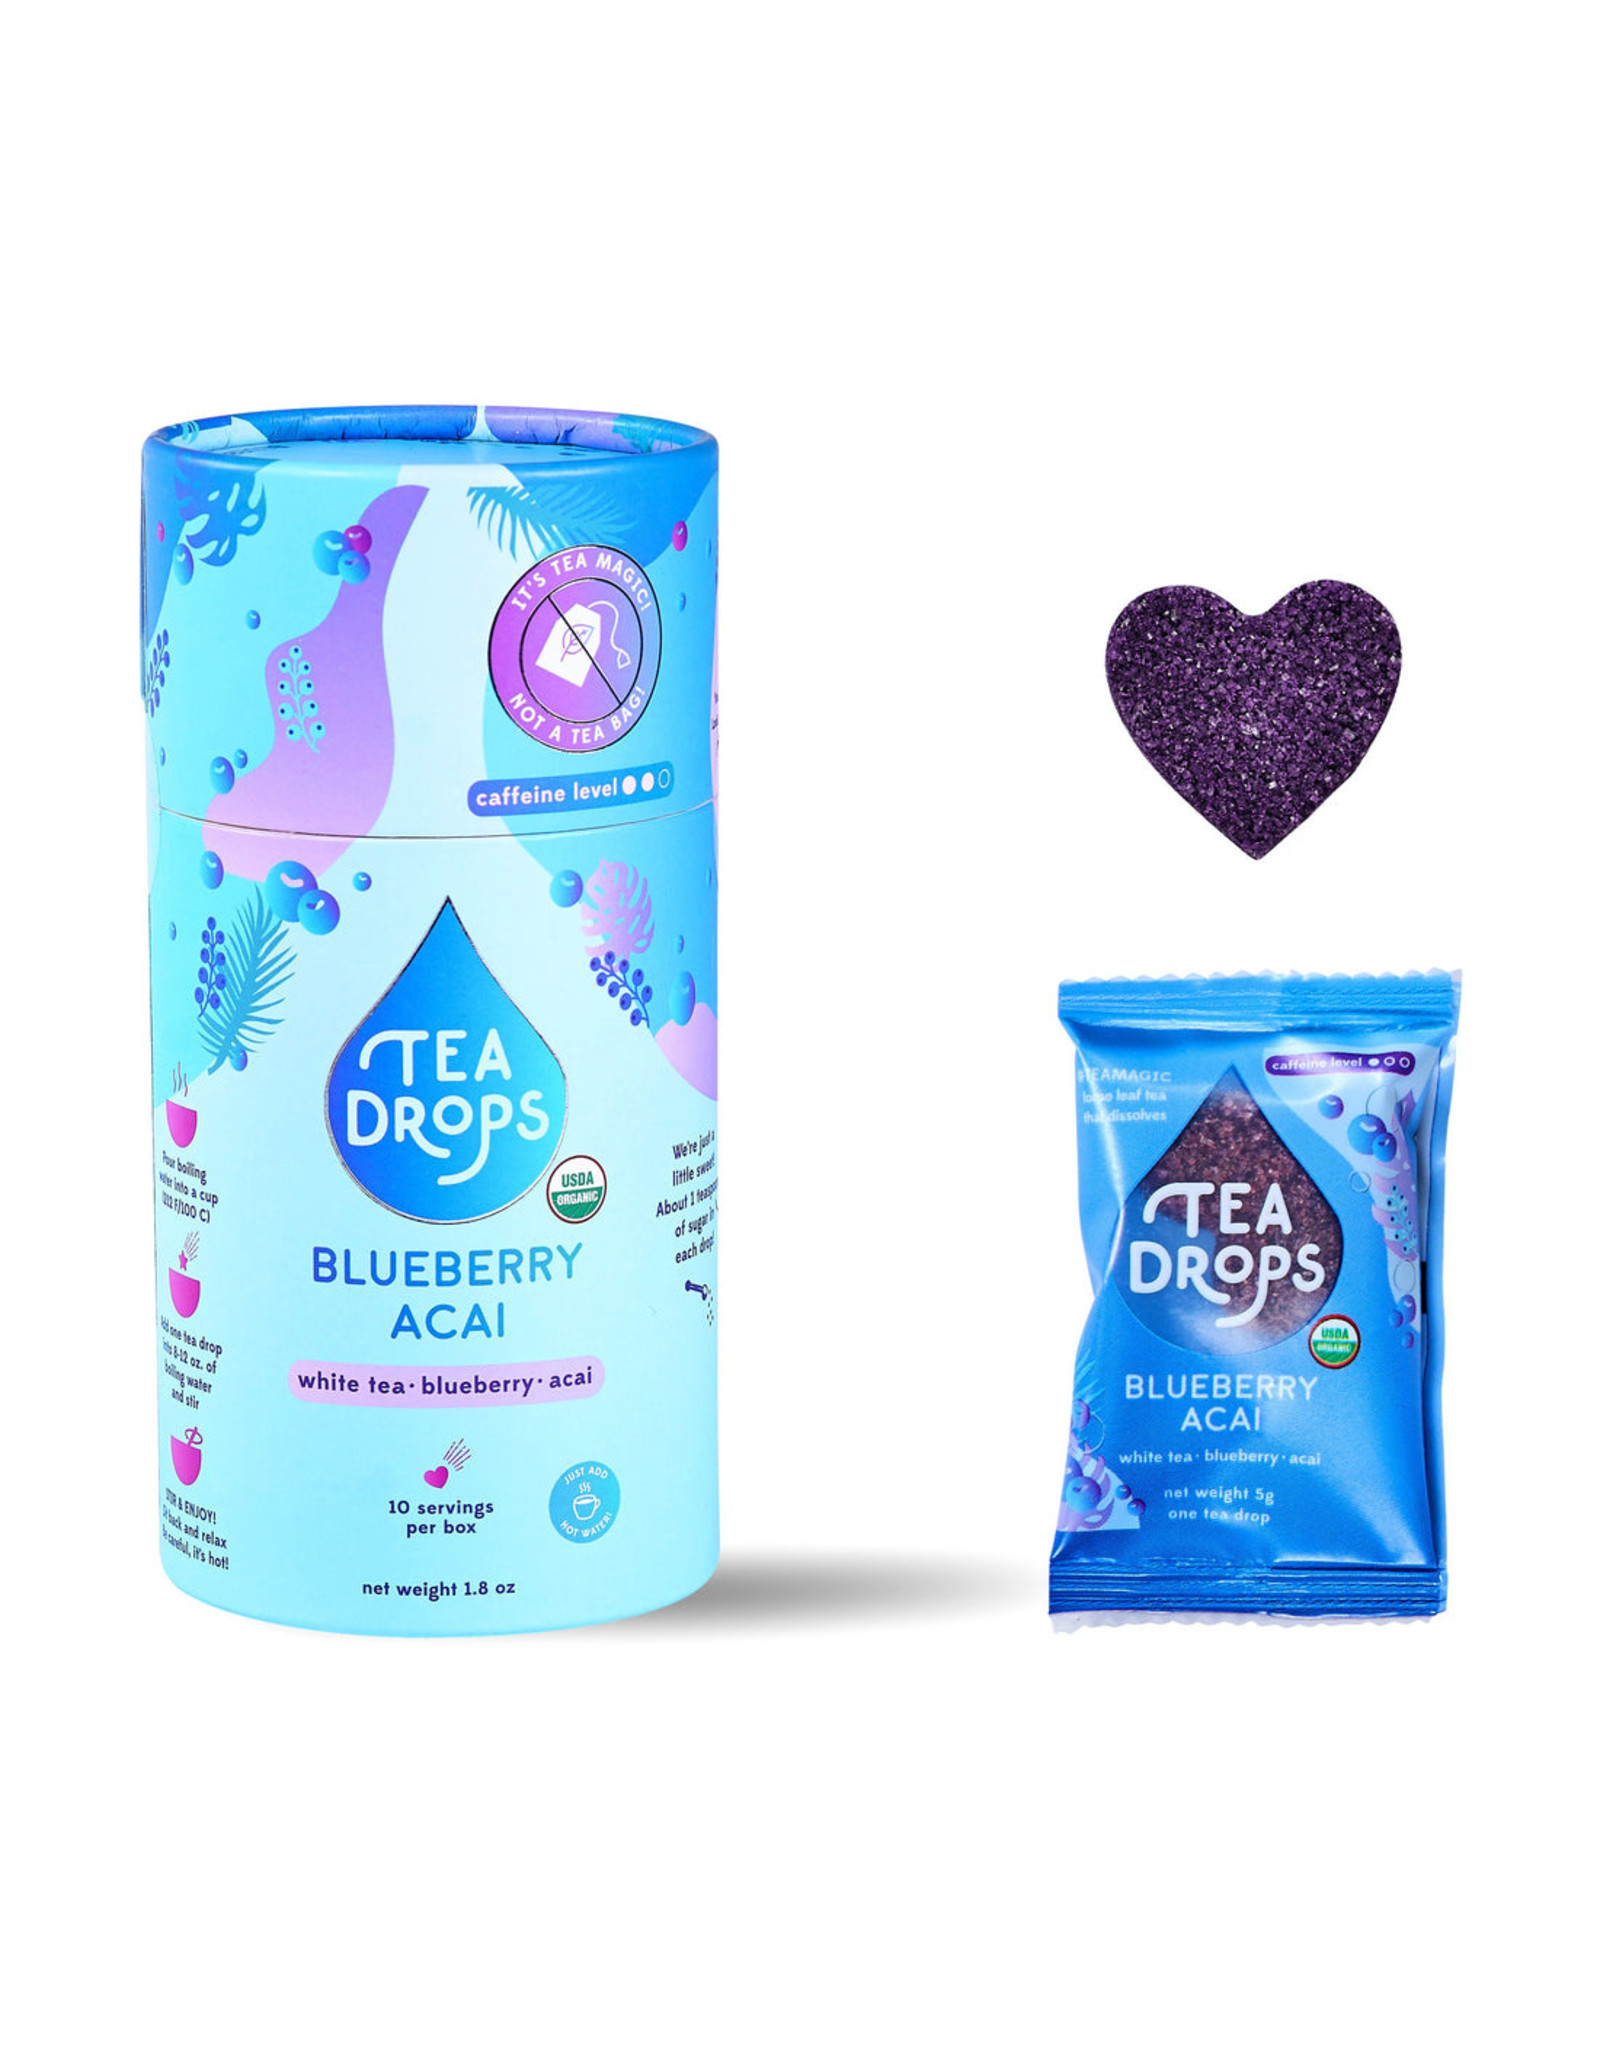 Tea Drop Blueberry Acai